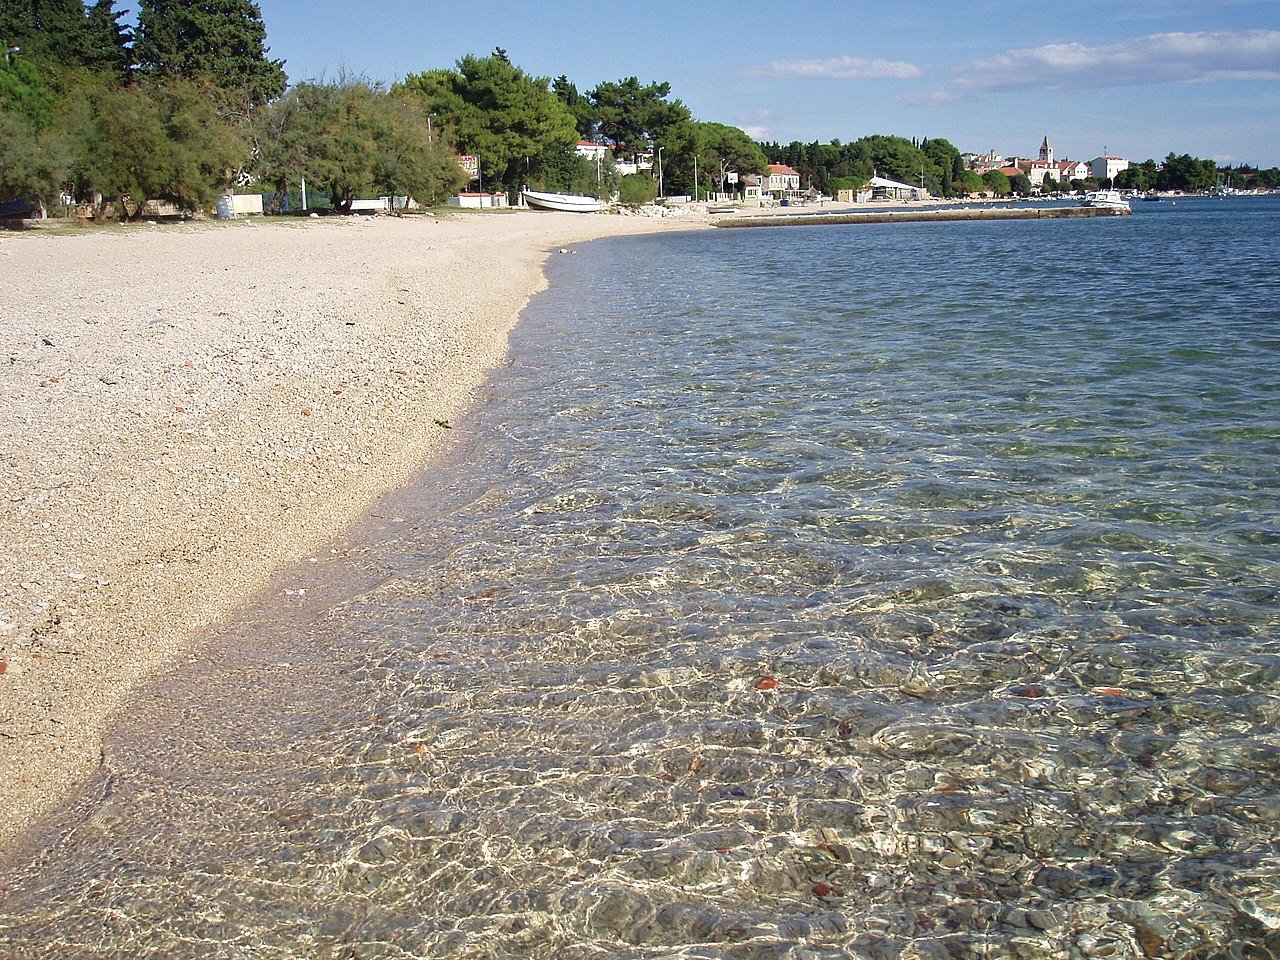 Lipauska Beach, Bibinje, Croatia